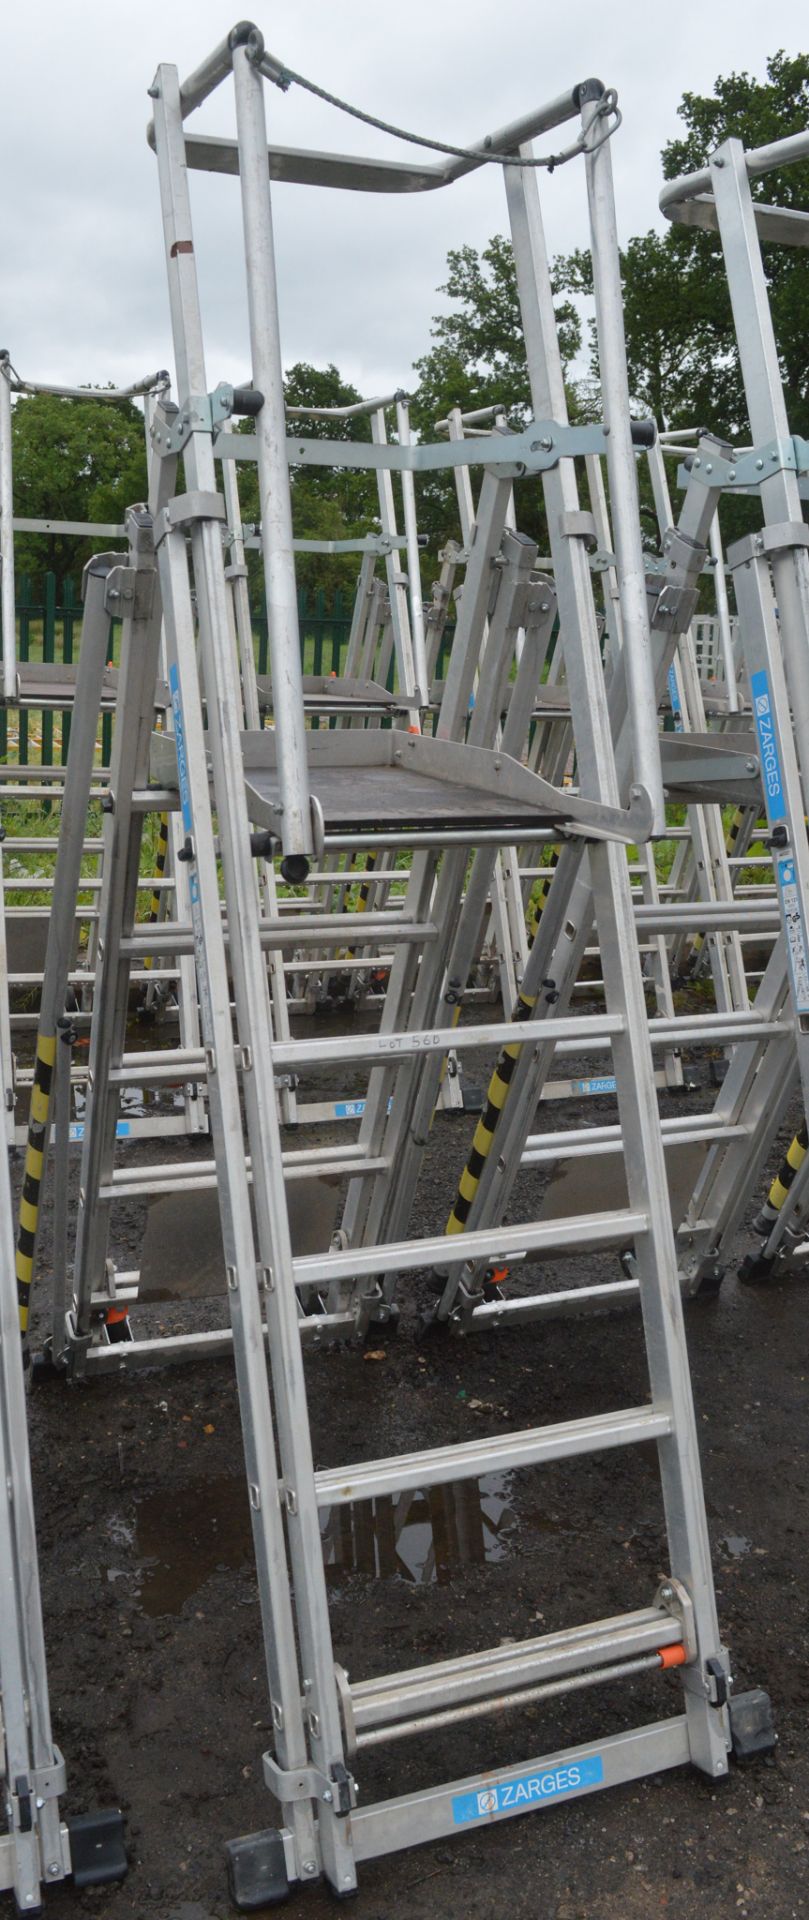 Zarges aluminium podium ladder A782457 - Image 2 of 2